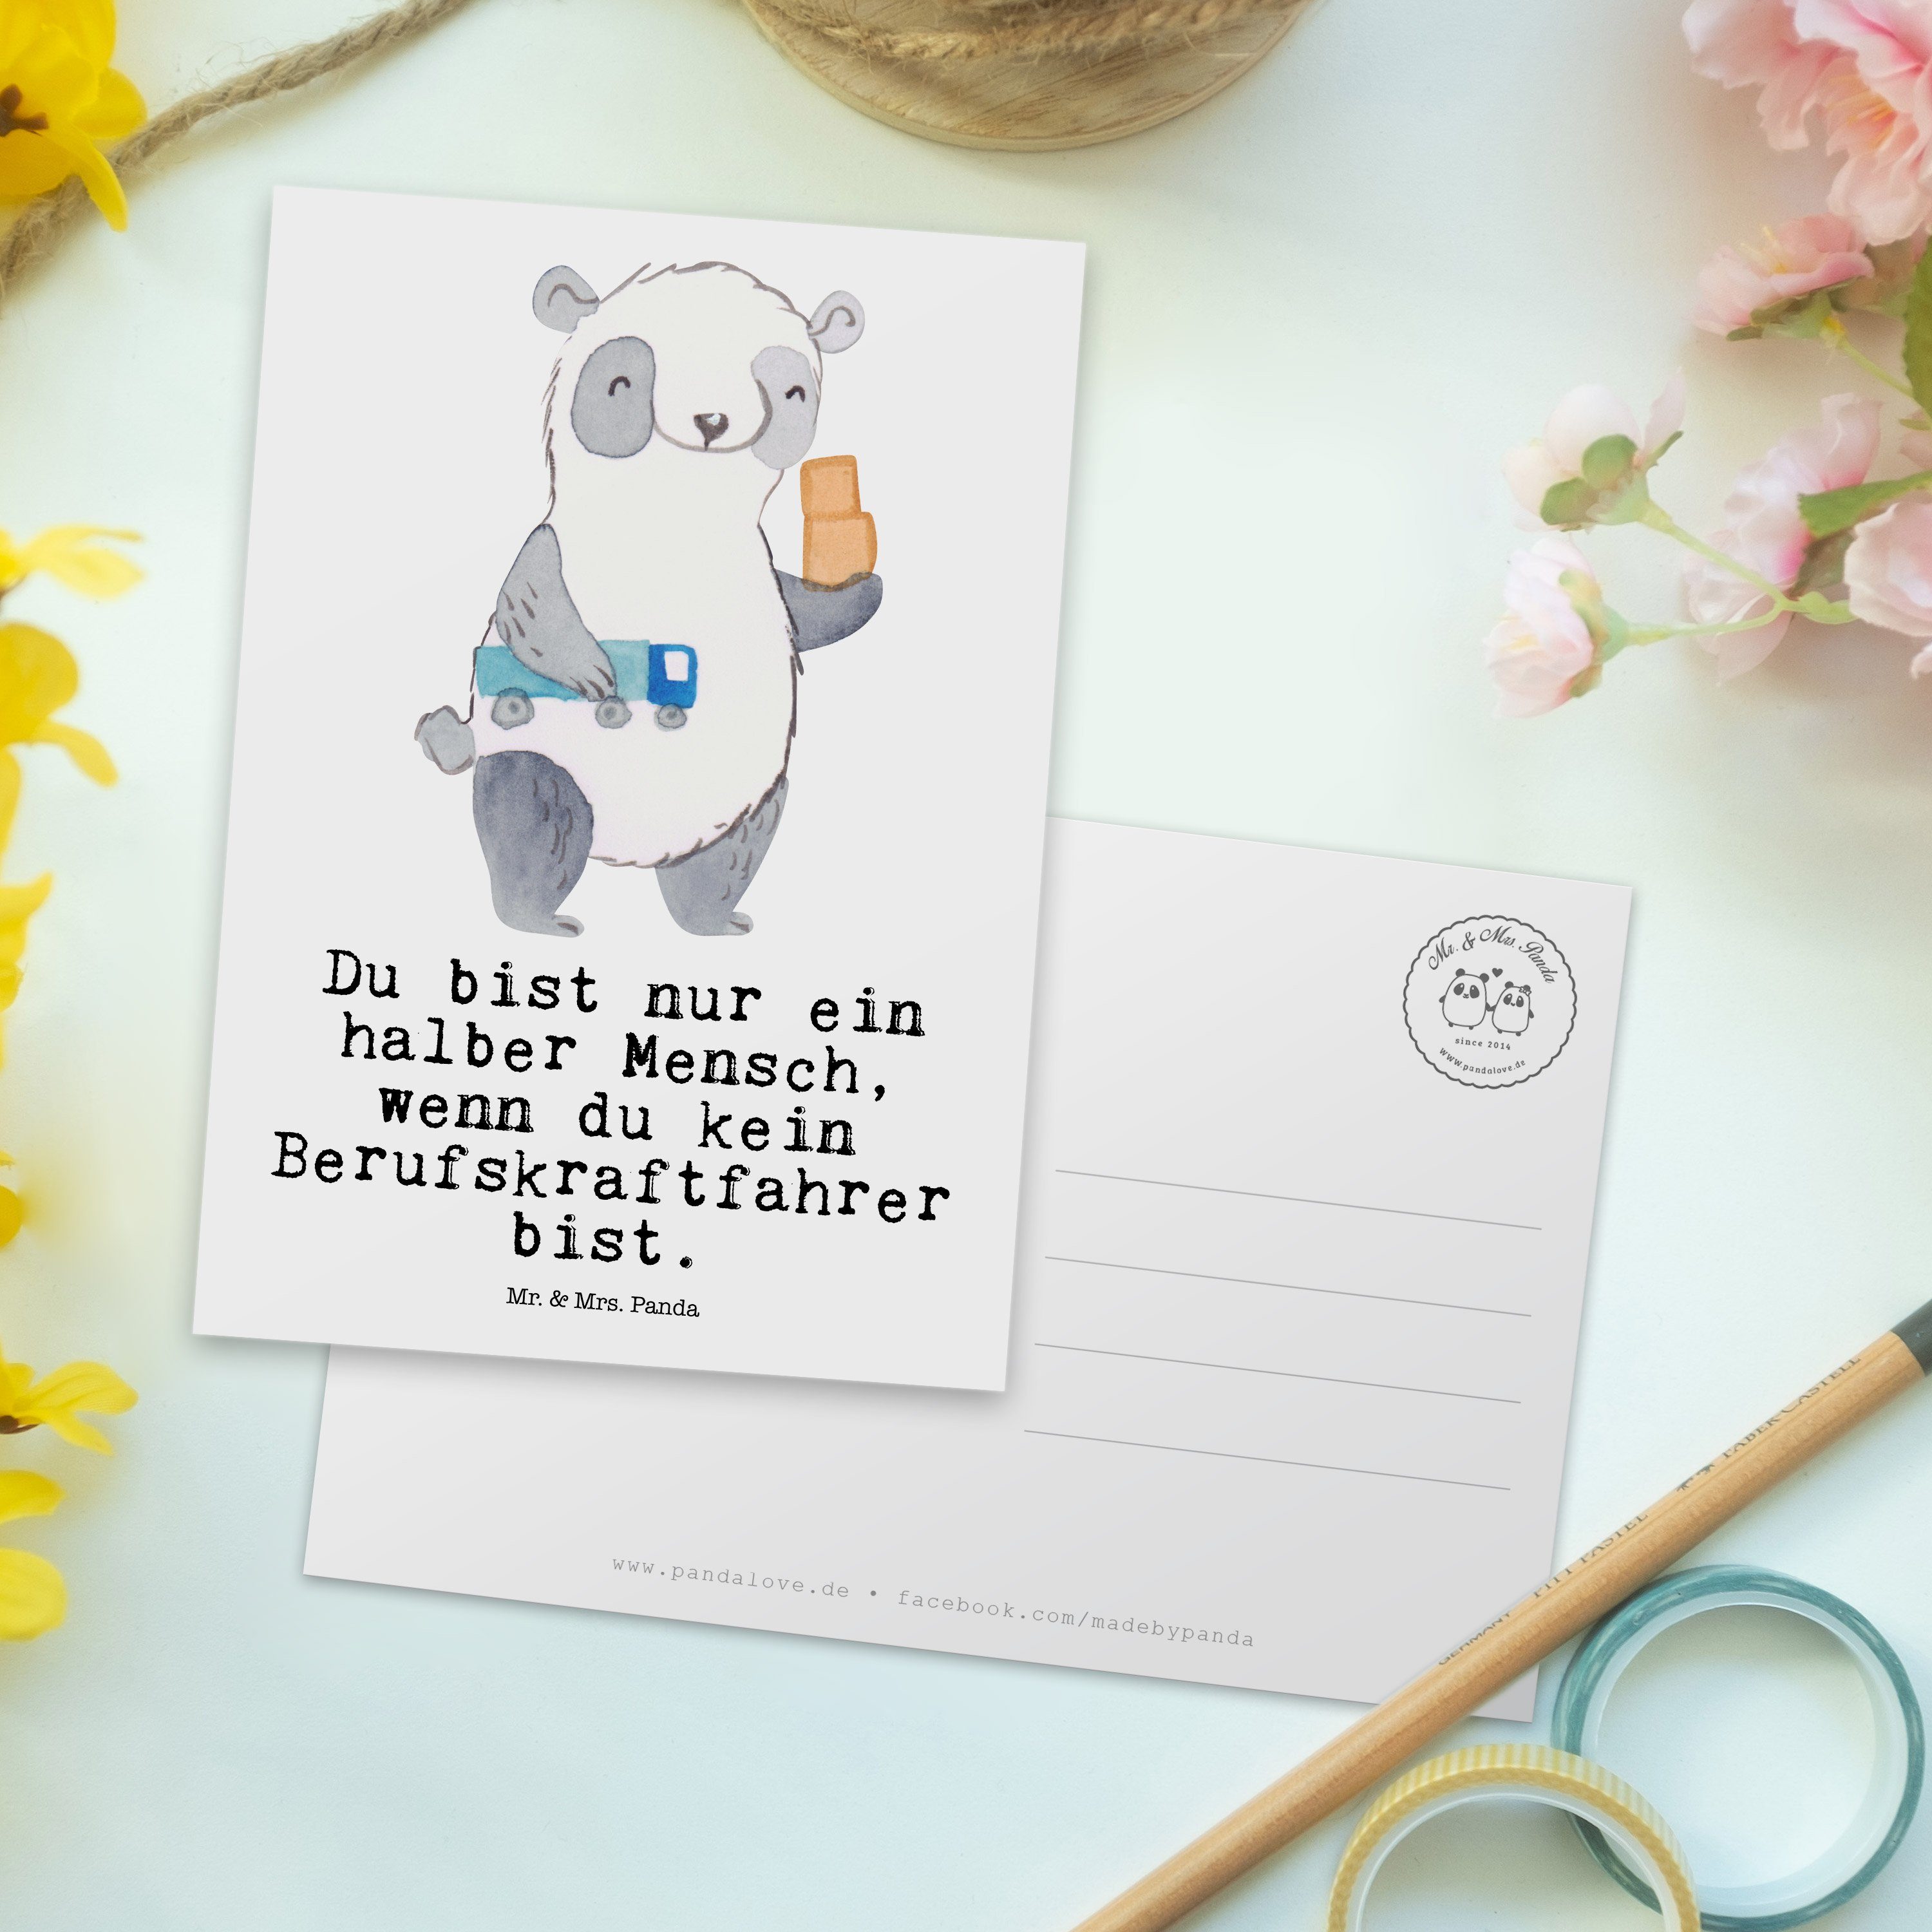 Schenken, Panda Mrs. & Mr. Geschenkkarte Herz Geschenk, Berufskraftfahrer - Postkarte - mit Weiß